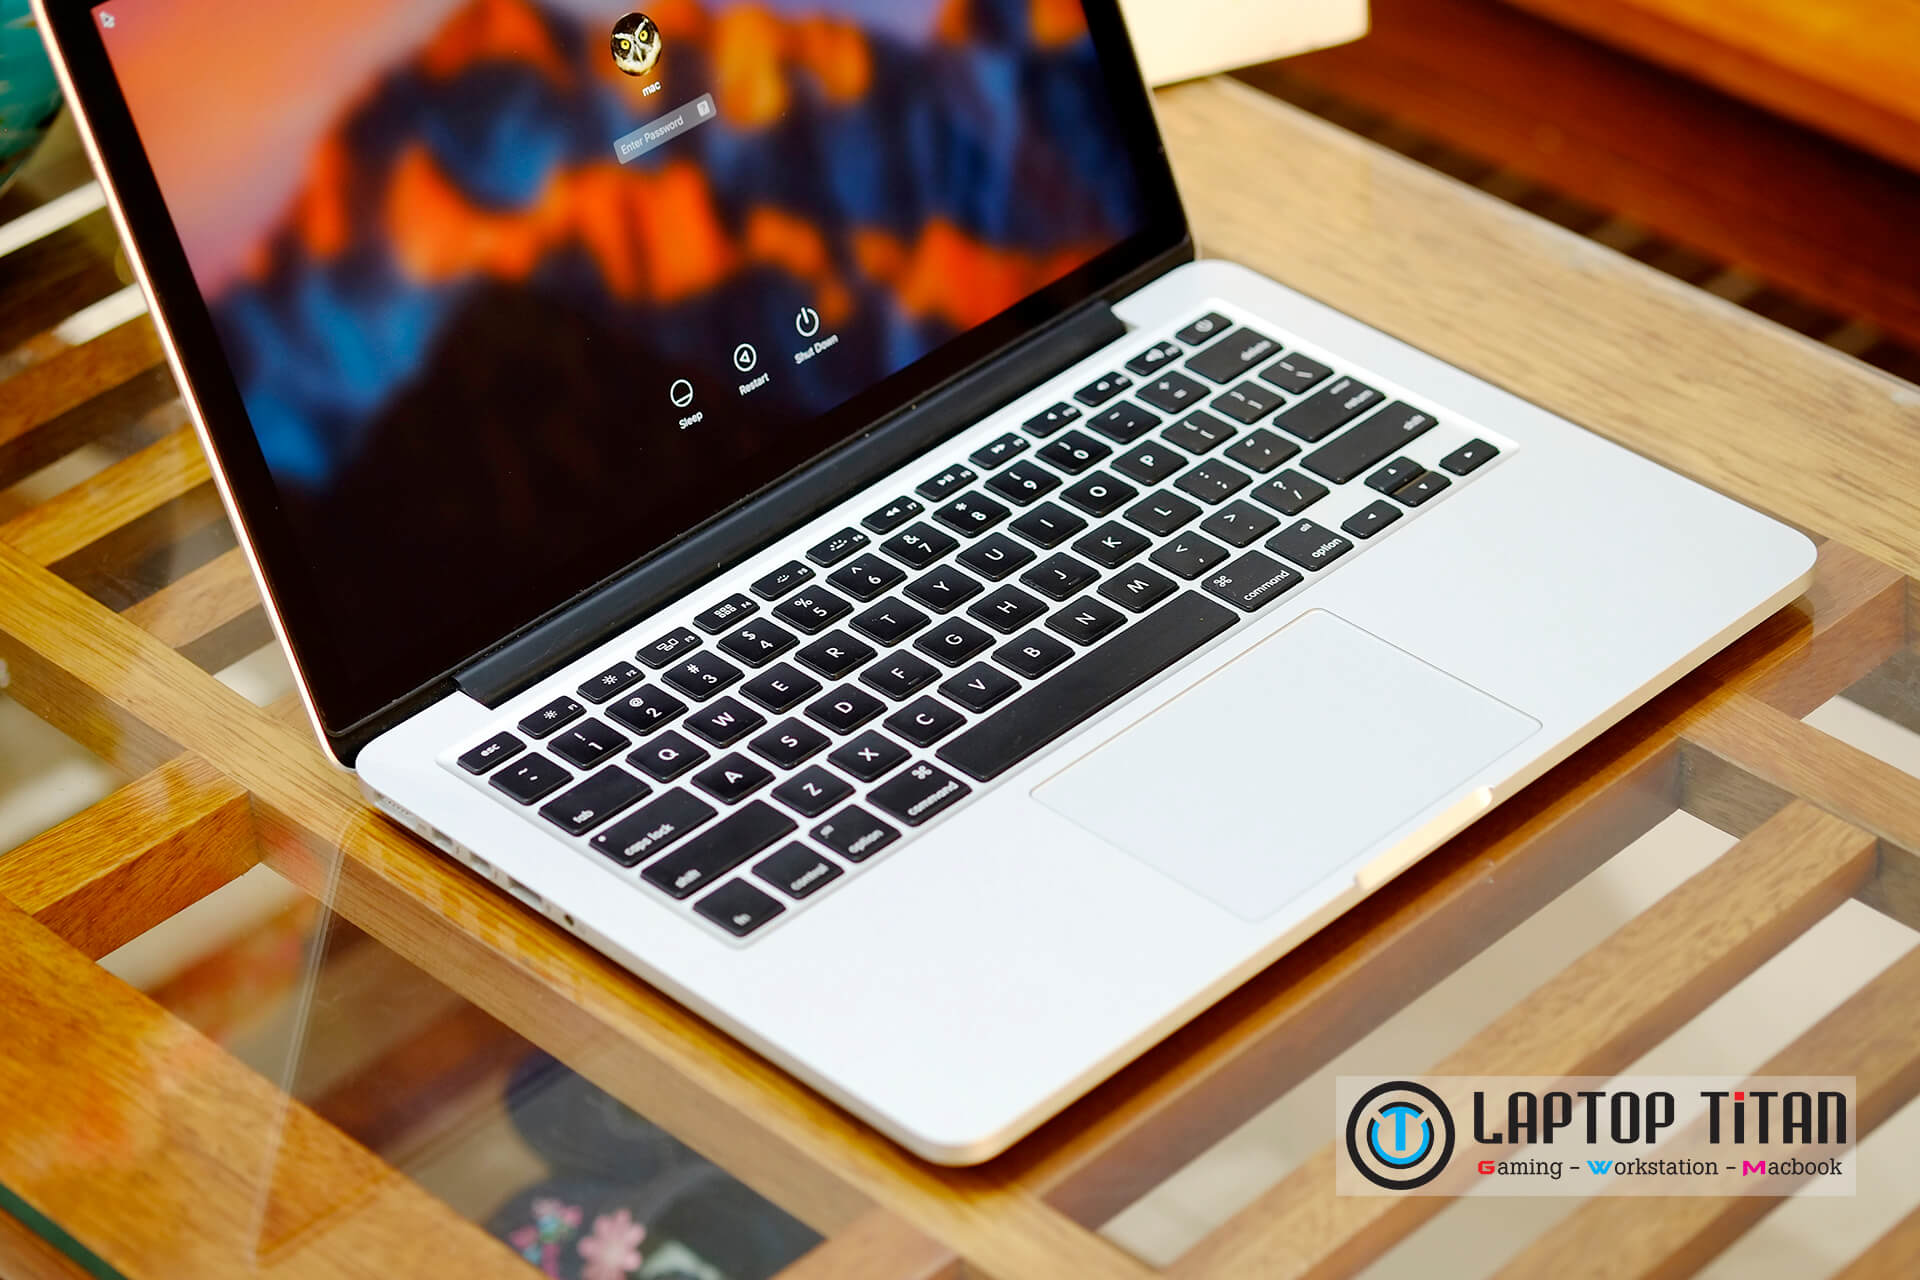 Macbook Pro 2015 Mf839 I5 / 8Gb / 128Gb / 13.3-Inch Retina / New 99%